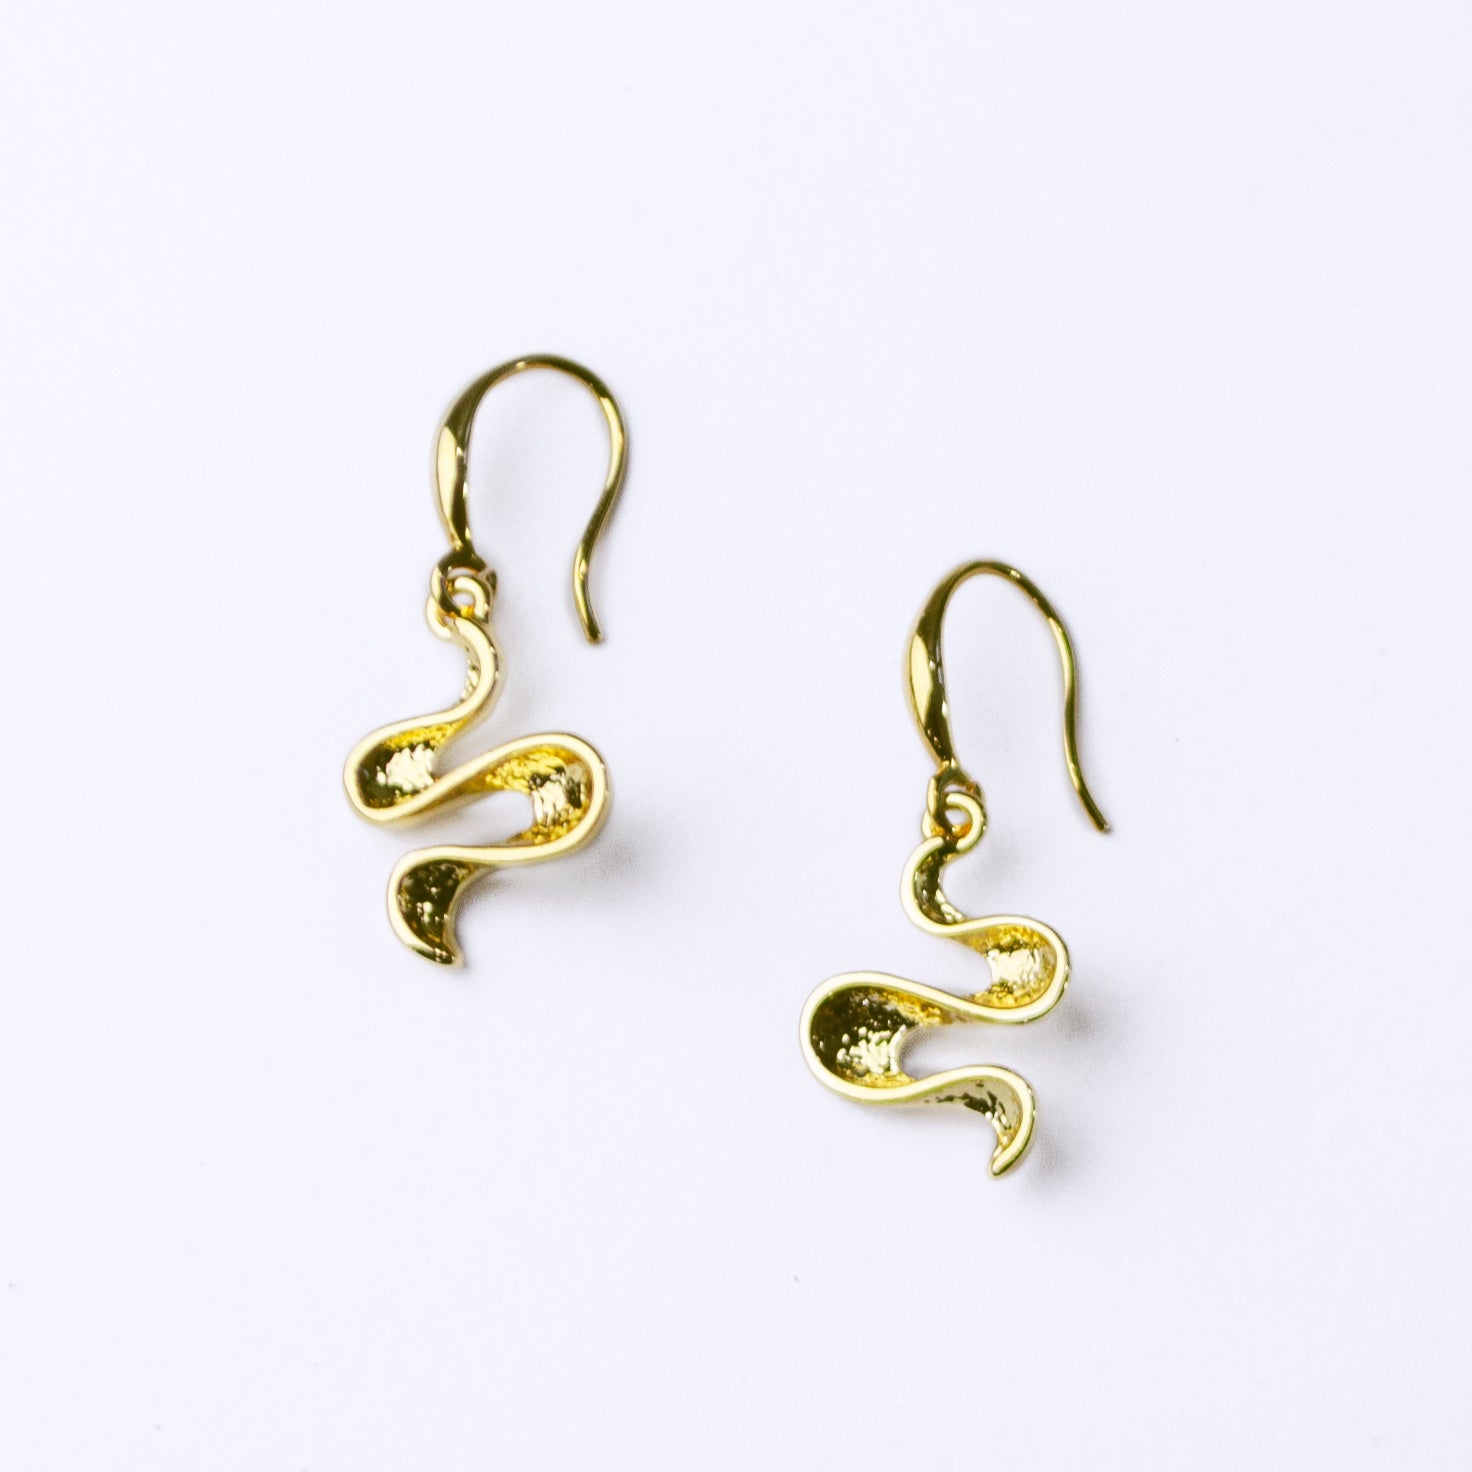 Boho Style Waves Earrings, Gold Statement Earrings for Women